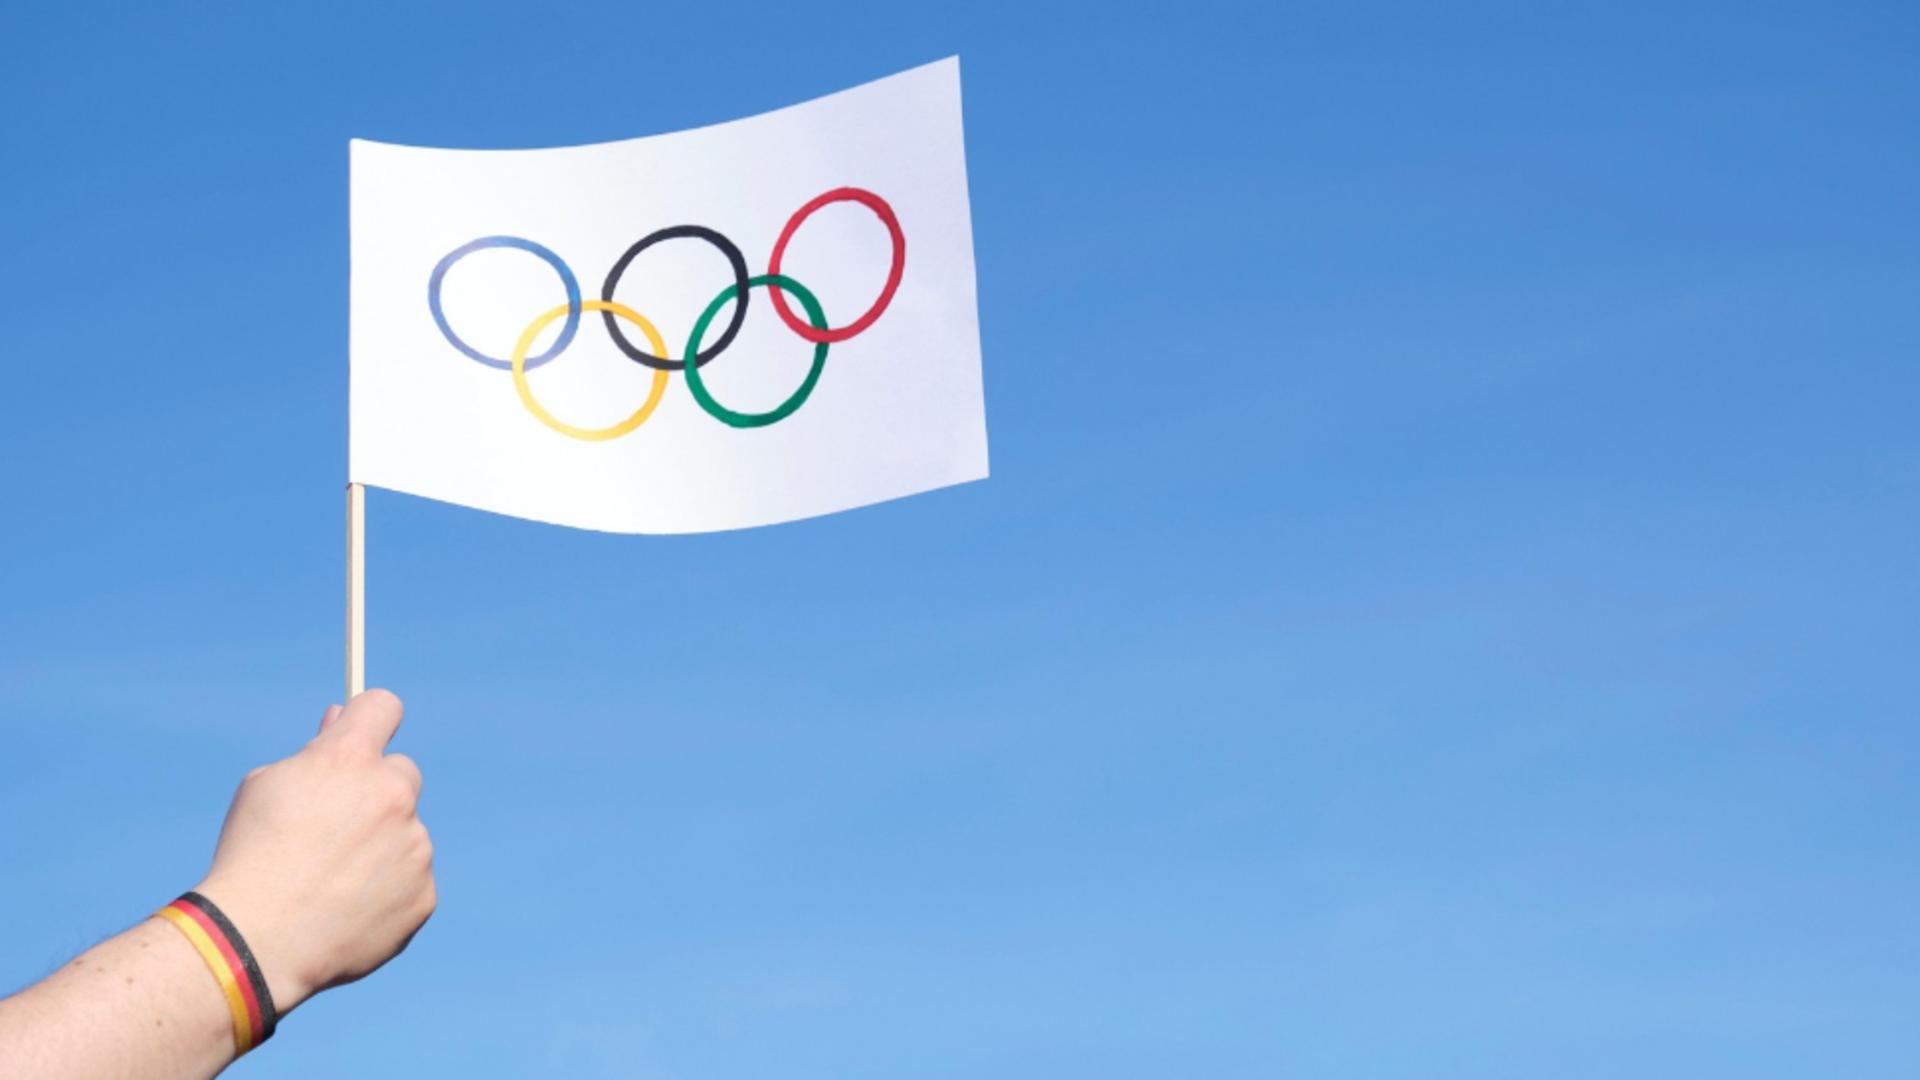 Steagul olimpic 